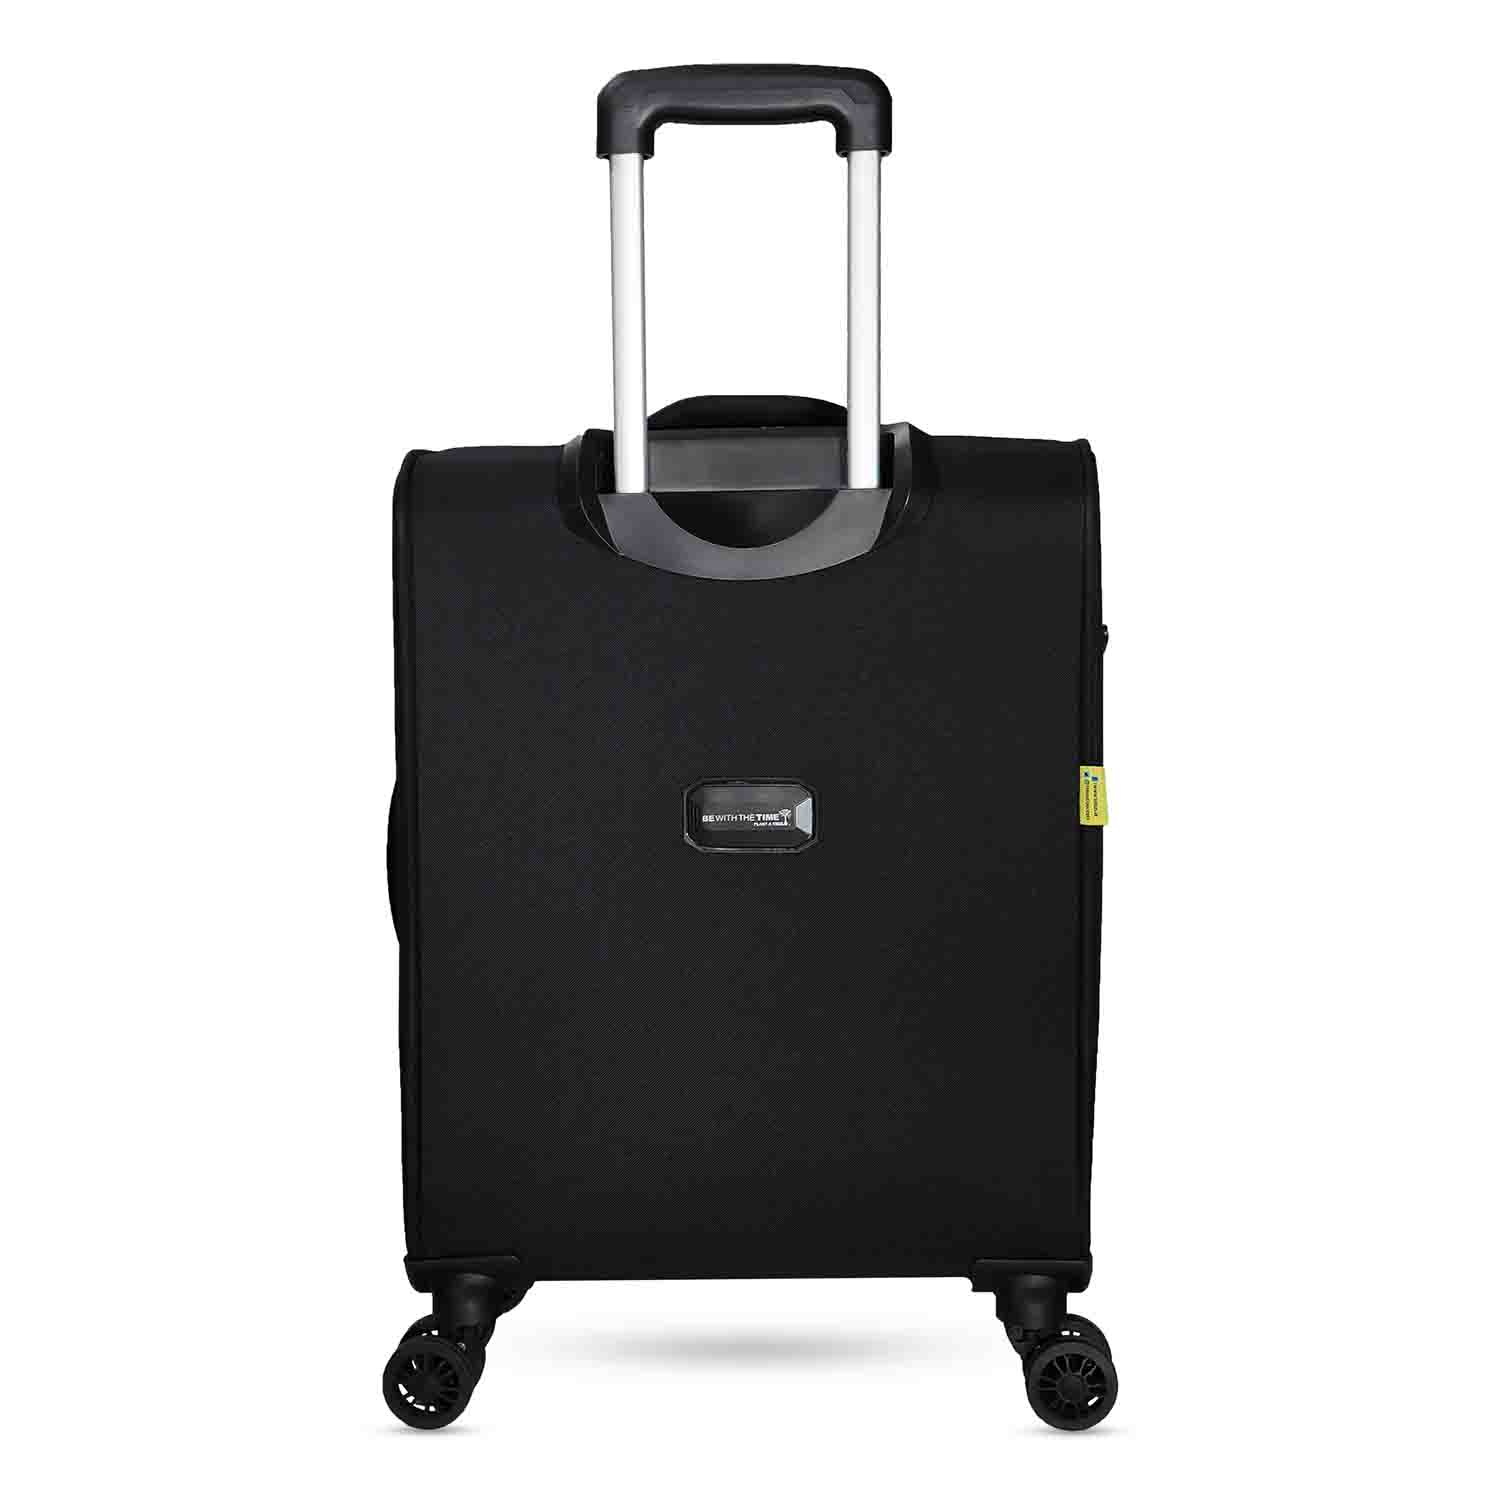 Timus-Lifestyle-Luggage-Soft-Luggage-trolley-bag-Flash-Plus-Luggage-Trolley-Bag-58cm-Black-3